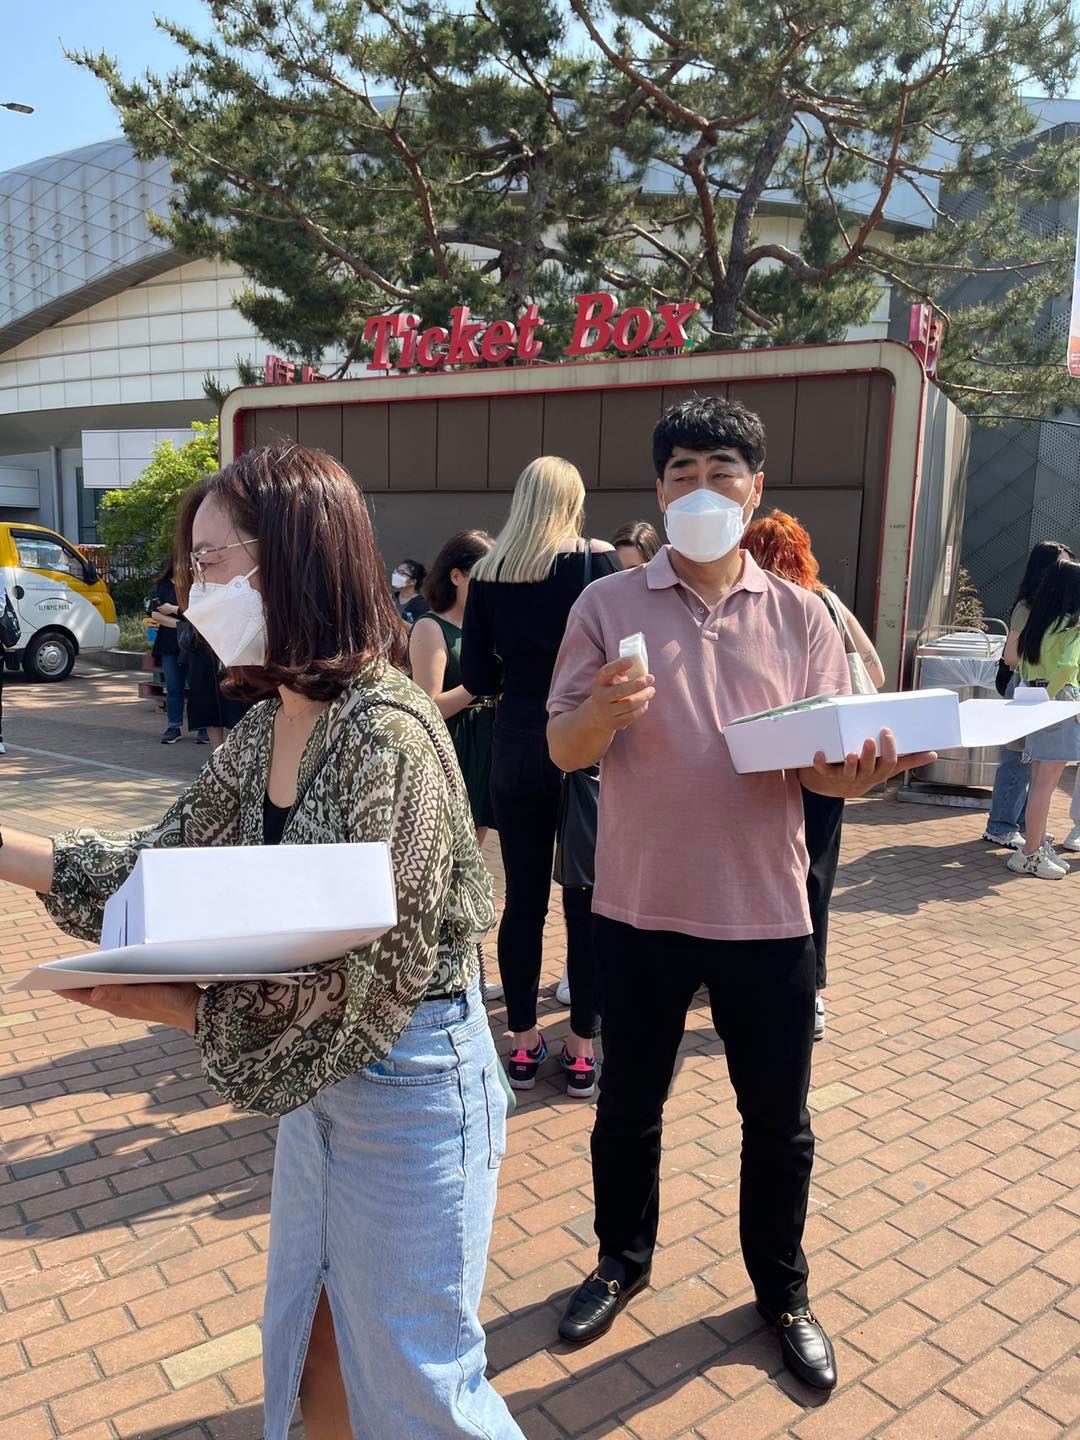 Hình ảnh bố mẹ GOT7 đứng phát bánh gạo cho fan trong khu vực tổ chức concert (1)